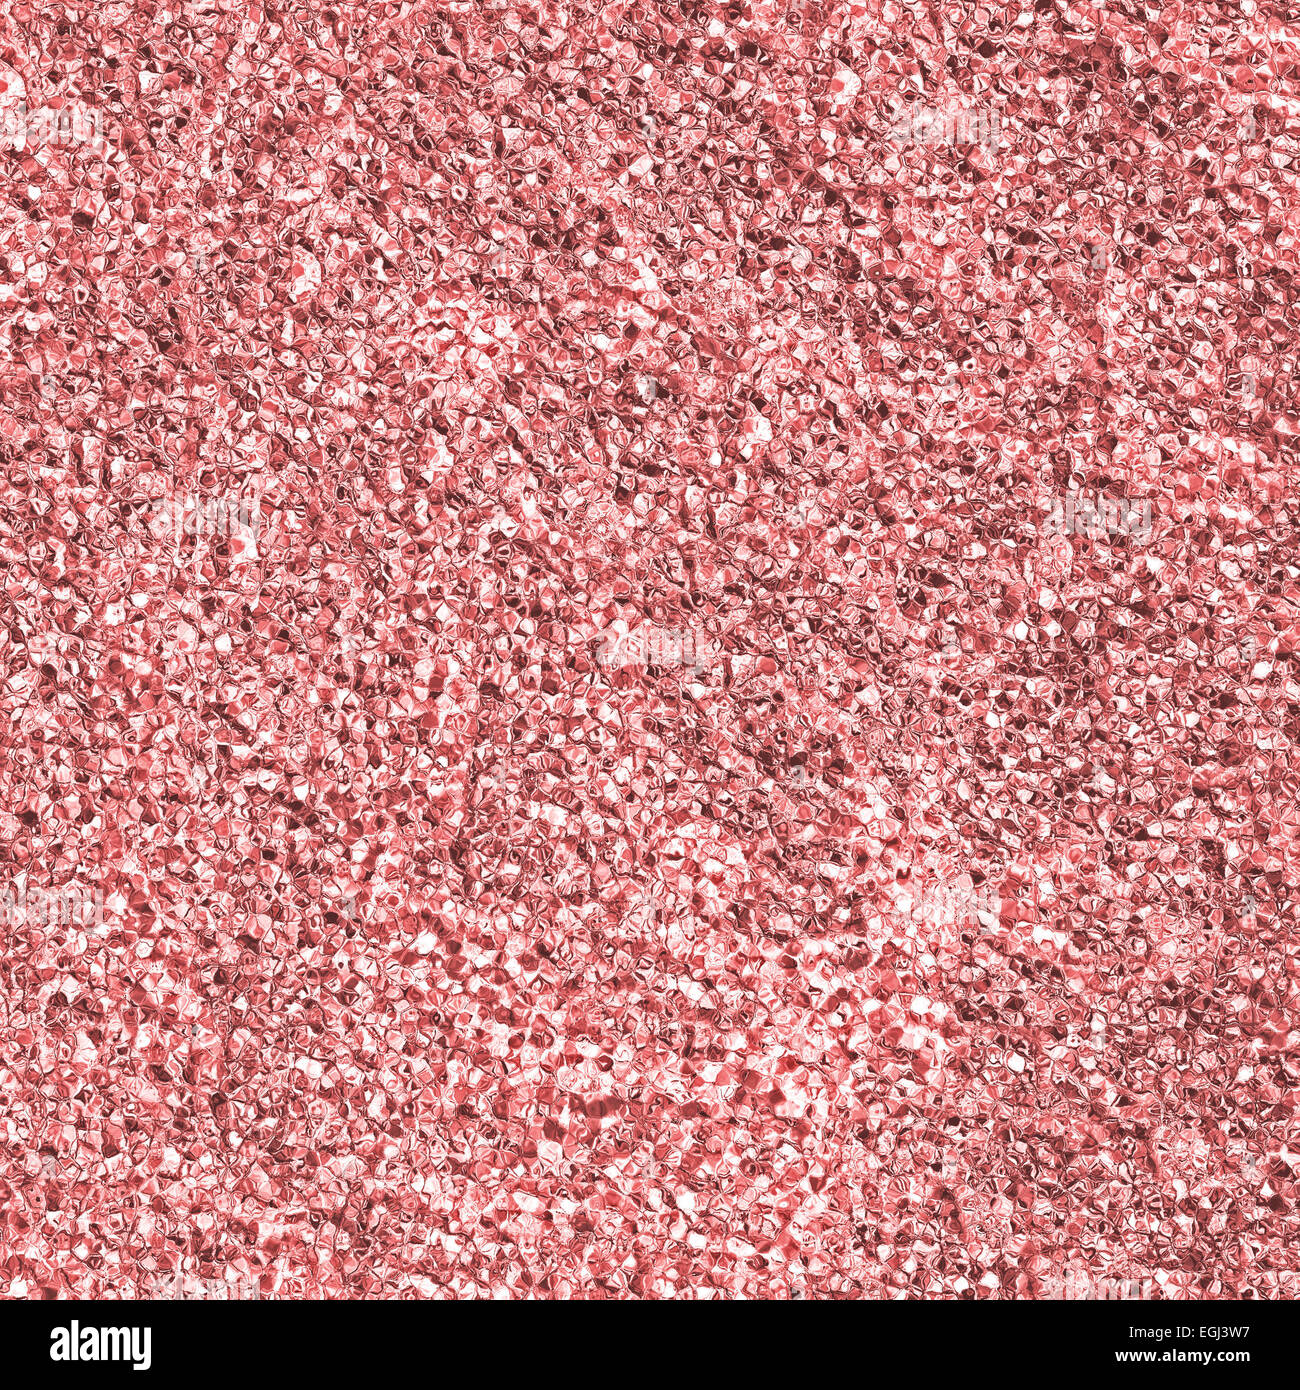 Zusammenfassung Hintergrund Granatapfel Samen Formen oder Blutzellen gebildet. Stockfoto